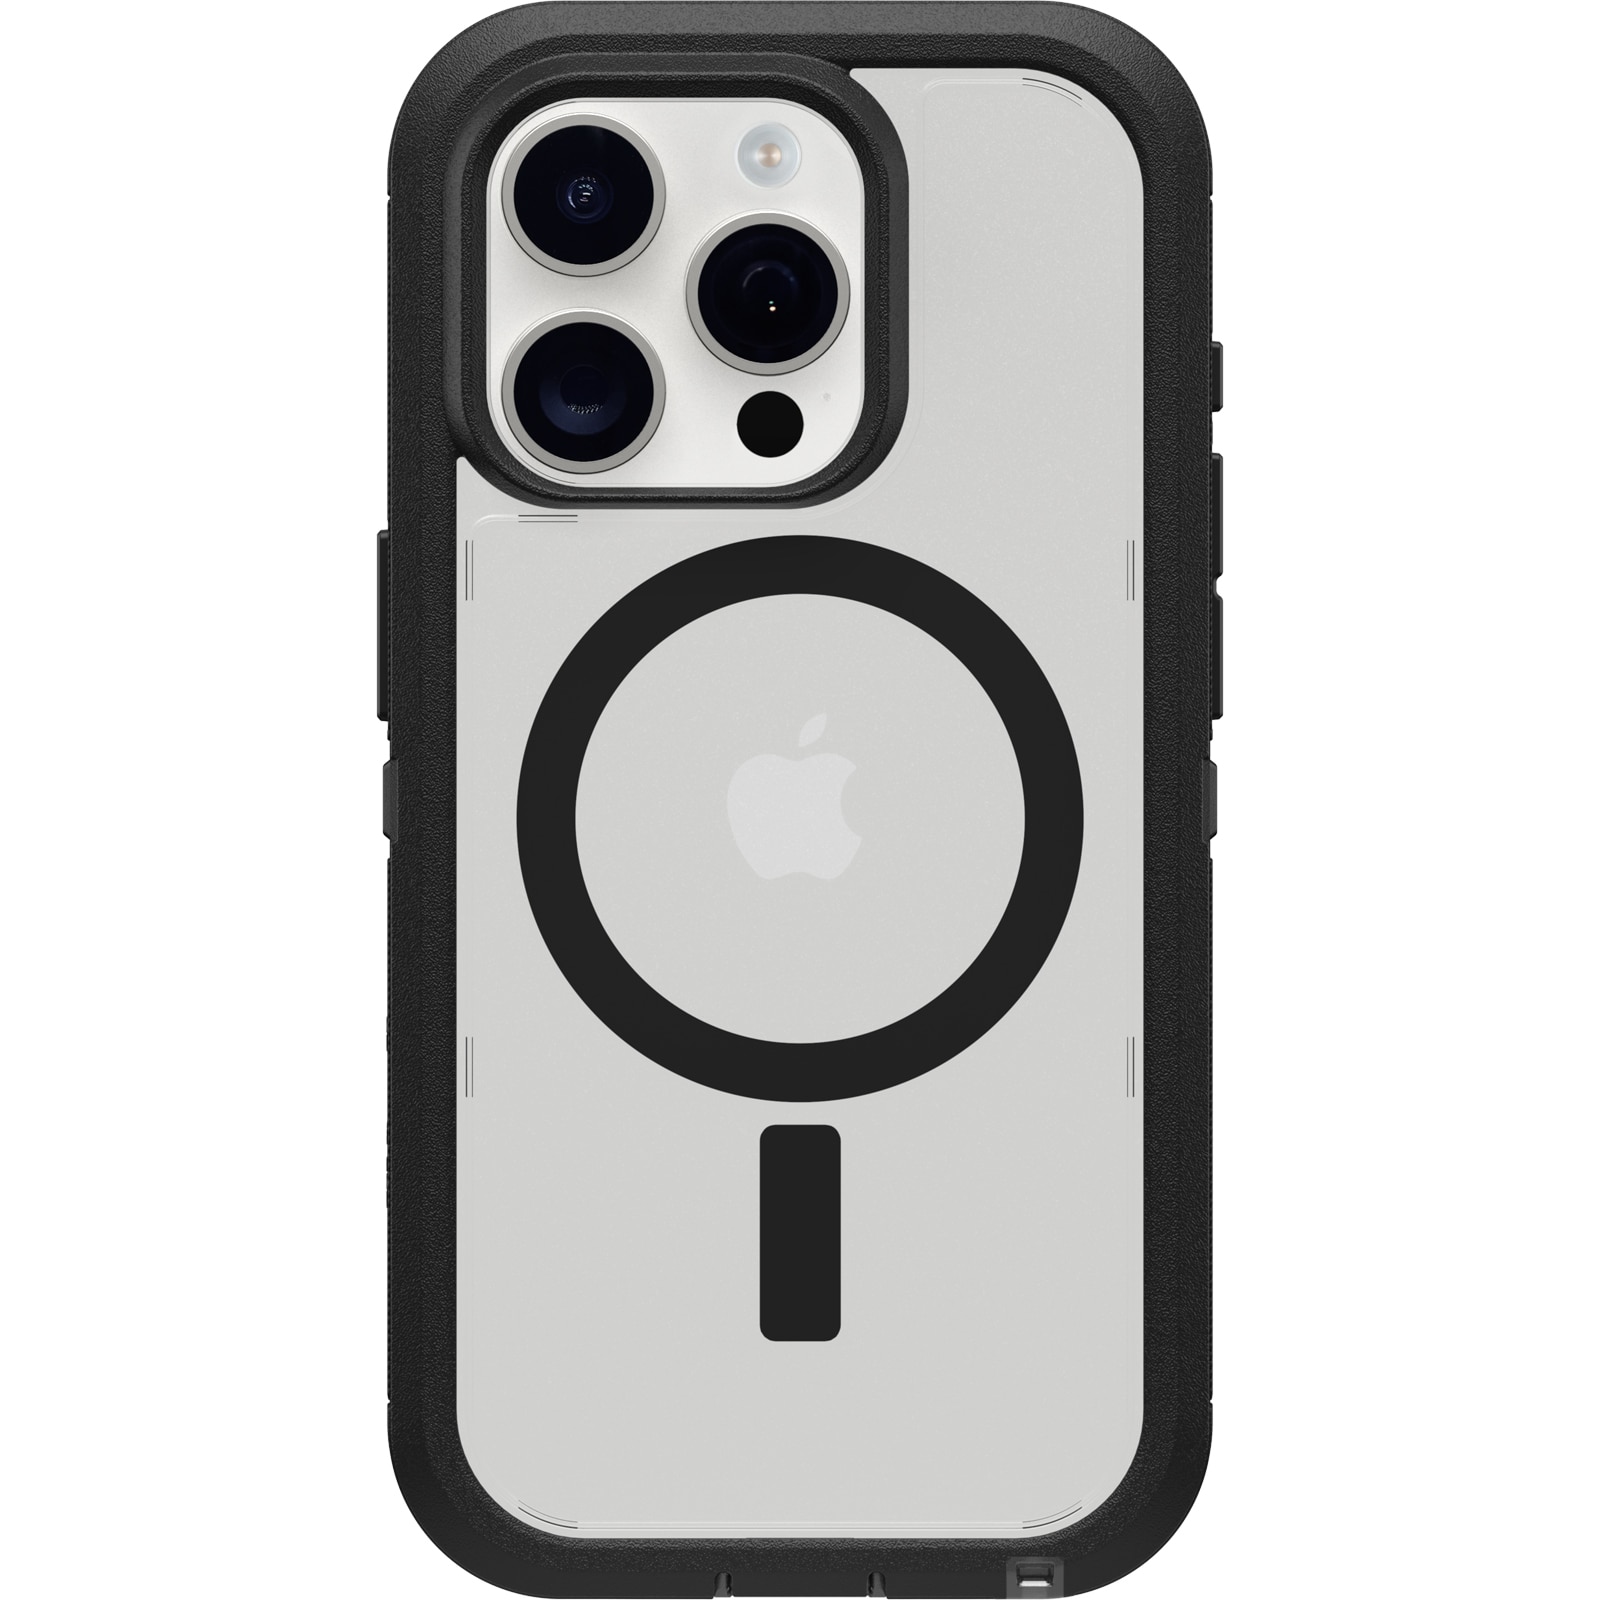 Defender XT Skal iPhone 15 Pro Clear/Black